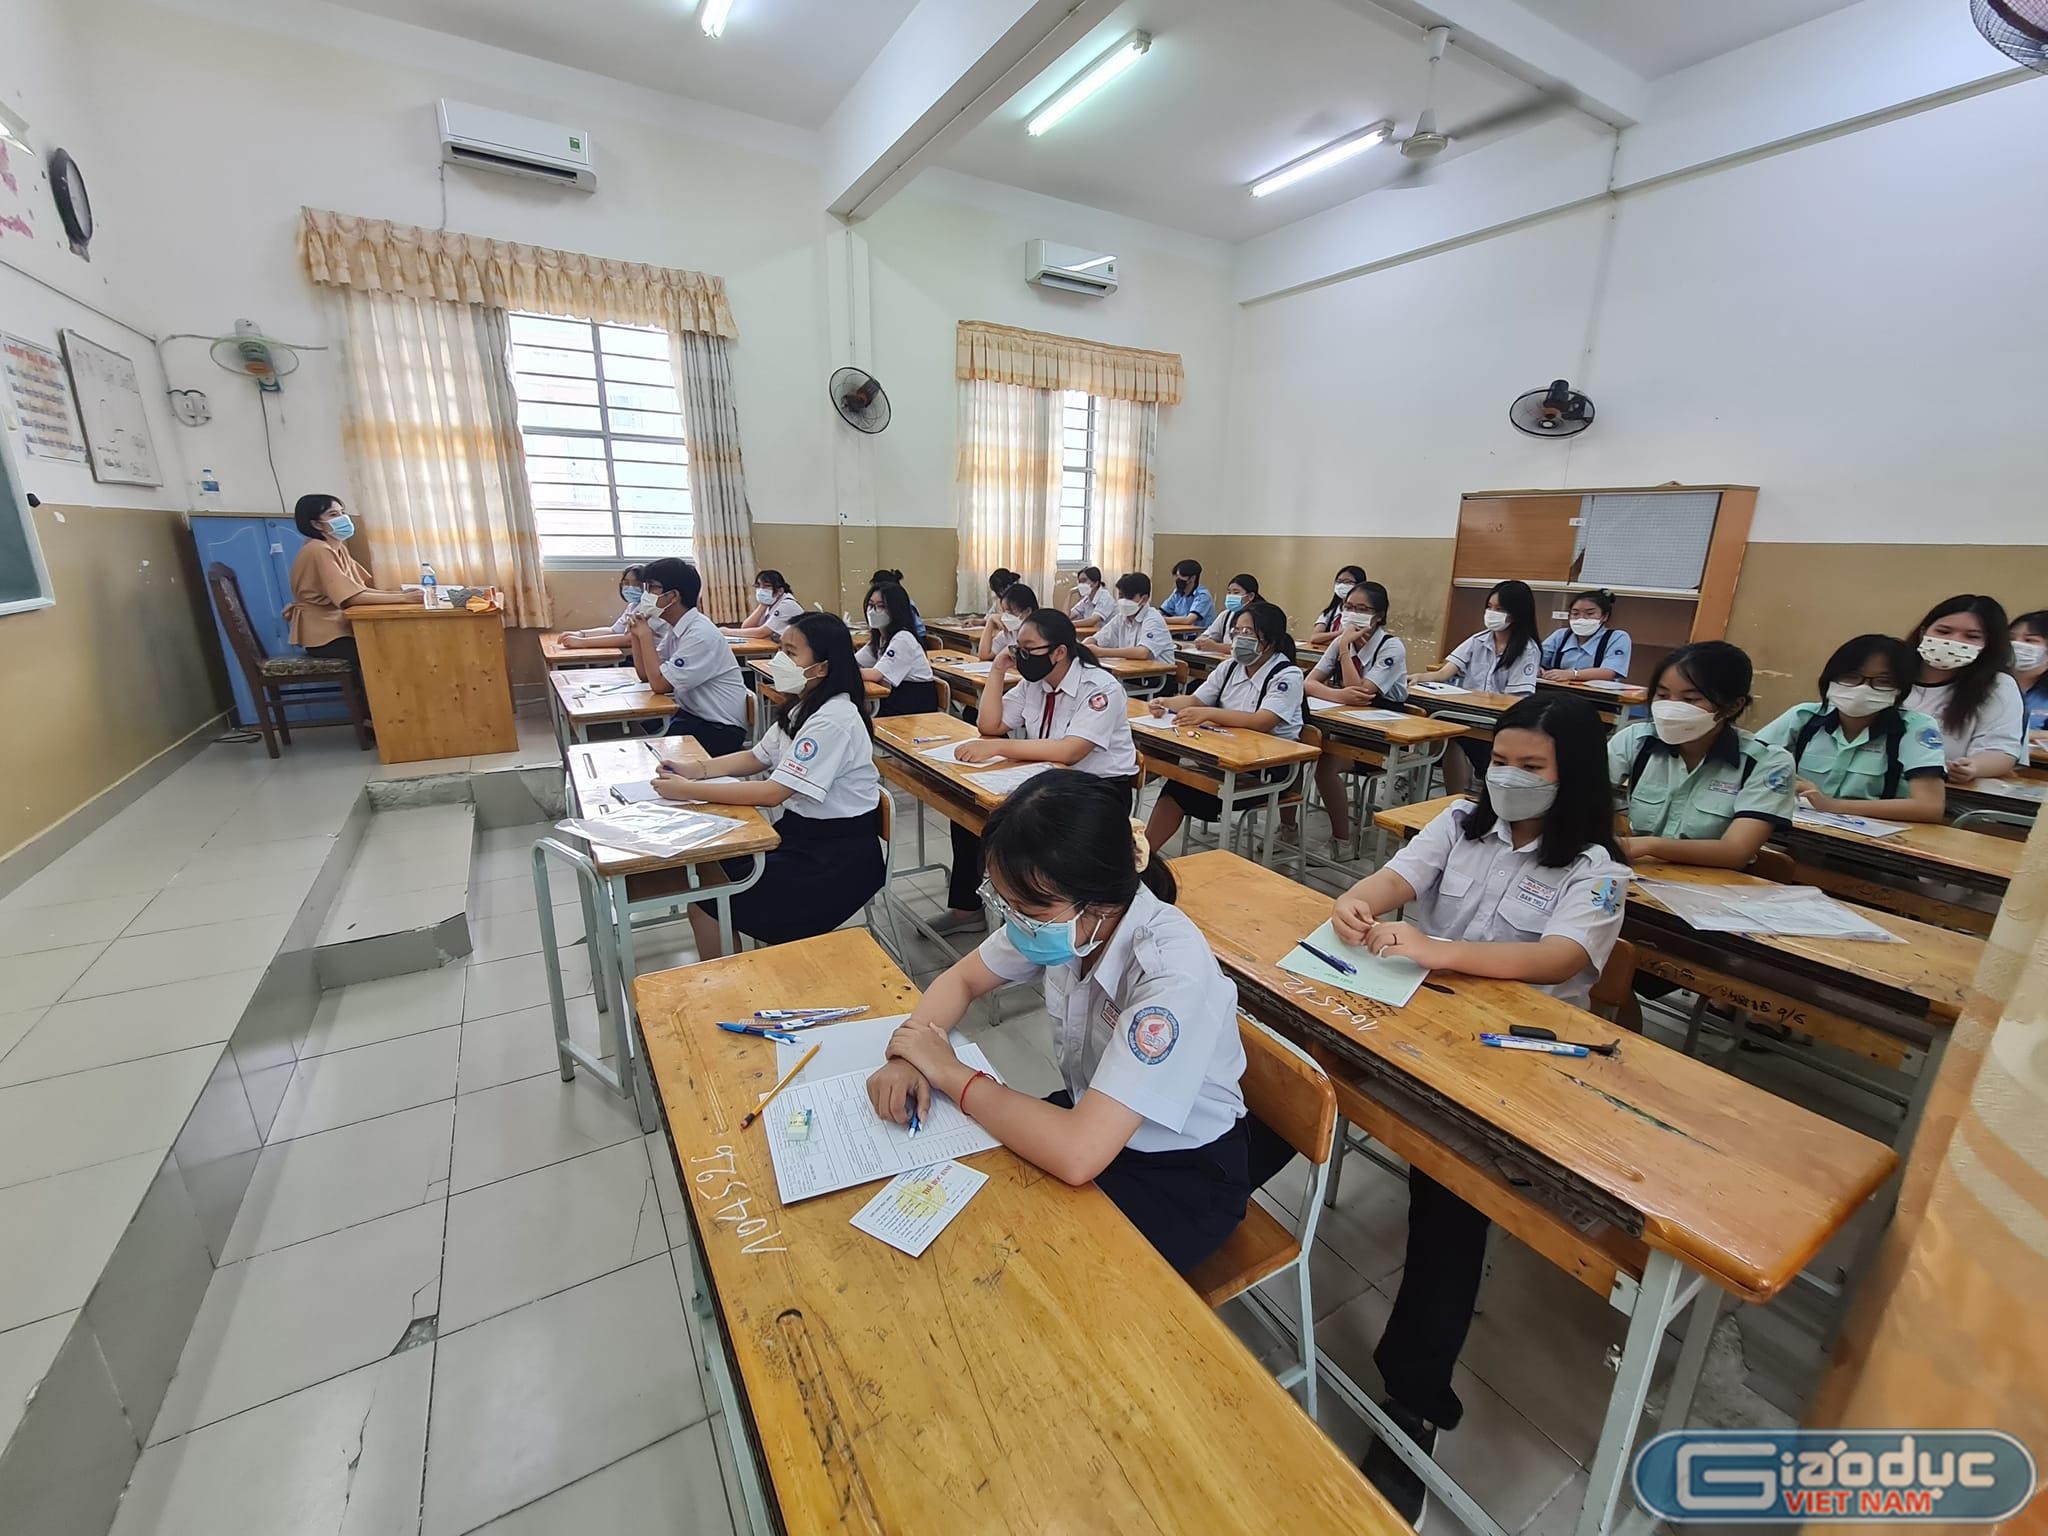 Ngã ngửa có em điểm học cao chót vót, thi vào 10 thấp khó tin, giáo viên lý giải - Giáo dục Việt Nam